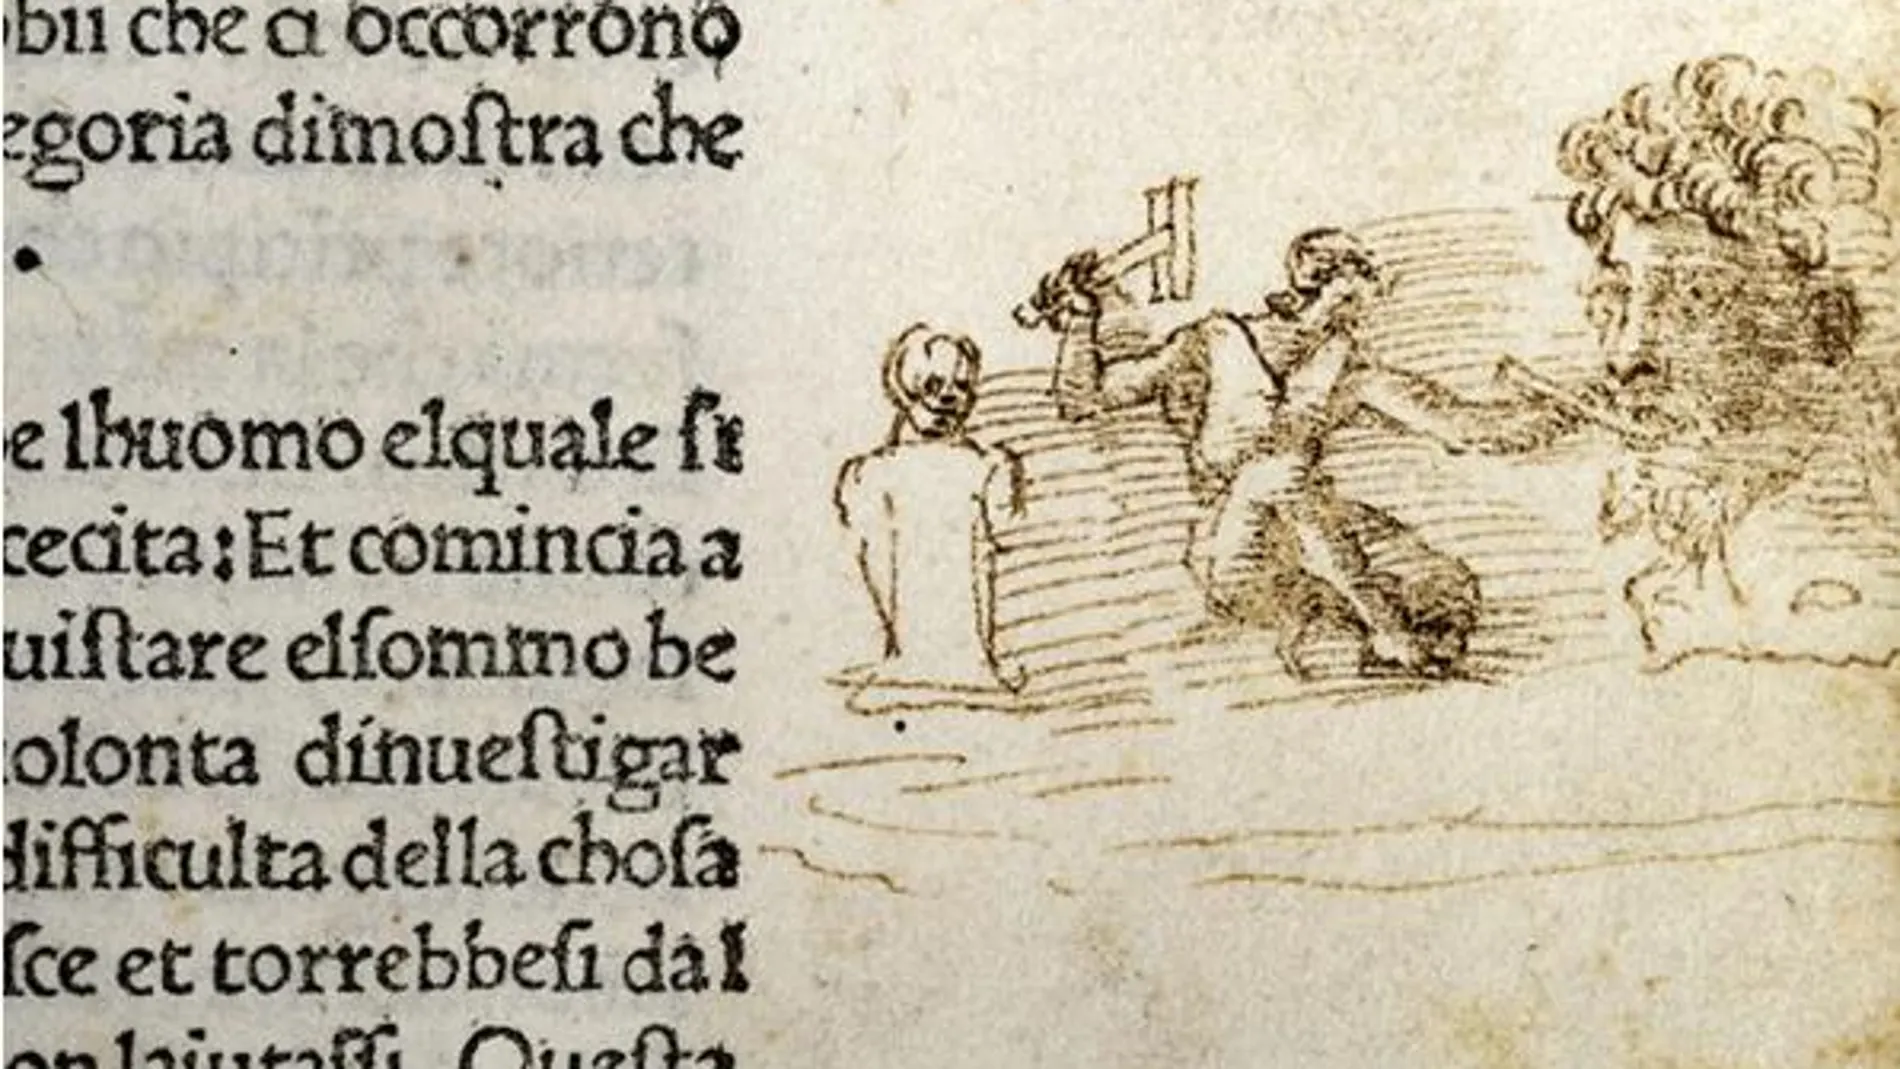 El dibujo donde supuestamente se representa a Miguel Ángel trabajando ha sido hallado en un libro del siglo XV